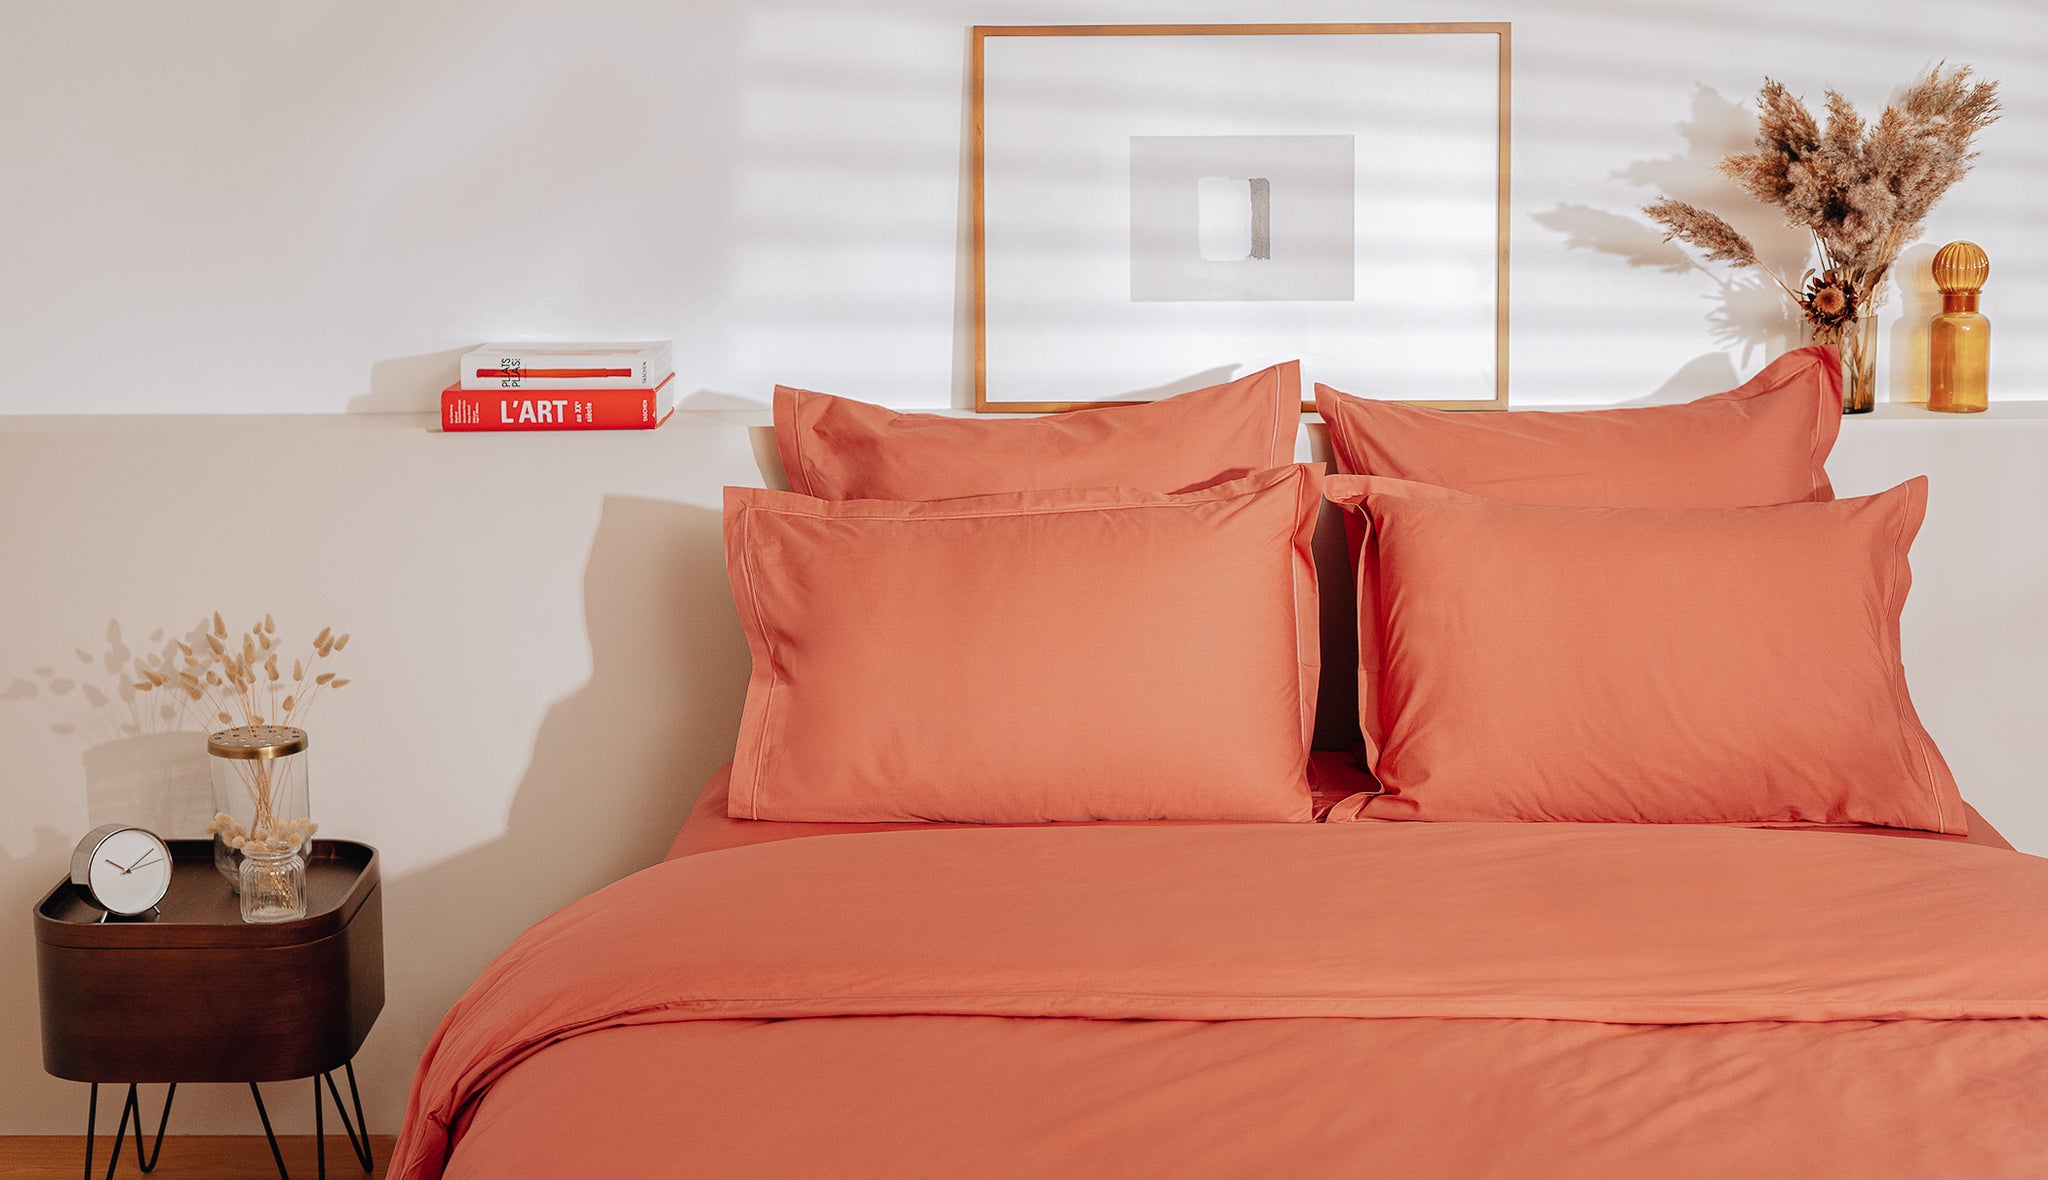 Sábana encimera de cama de alta calidad, transpirable y suave, solo sábana  superior, fácil de cuidar y fácil de limpiar (beige, Queen)